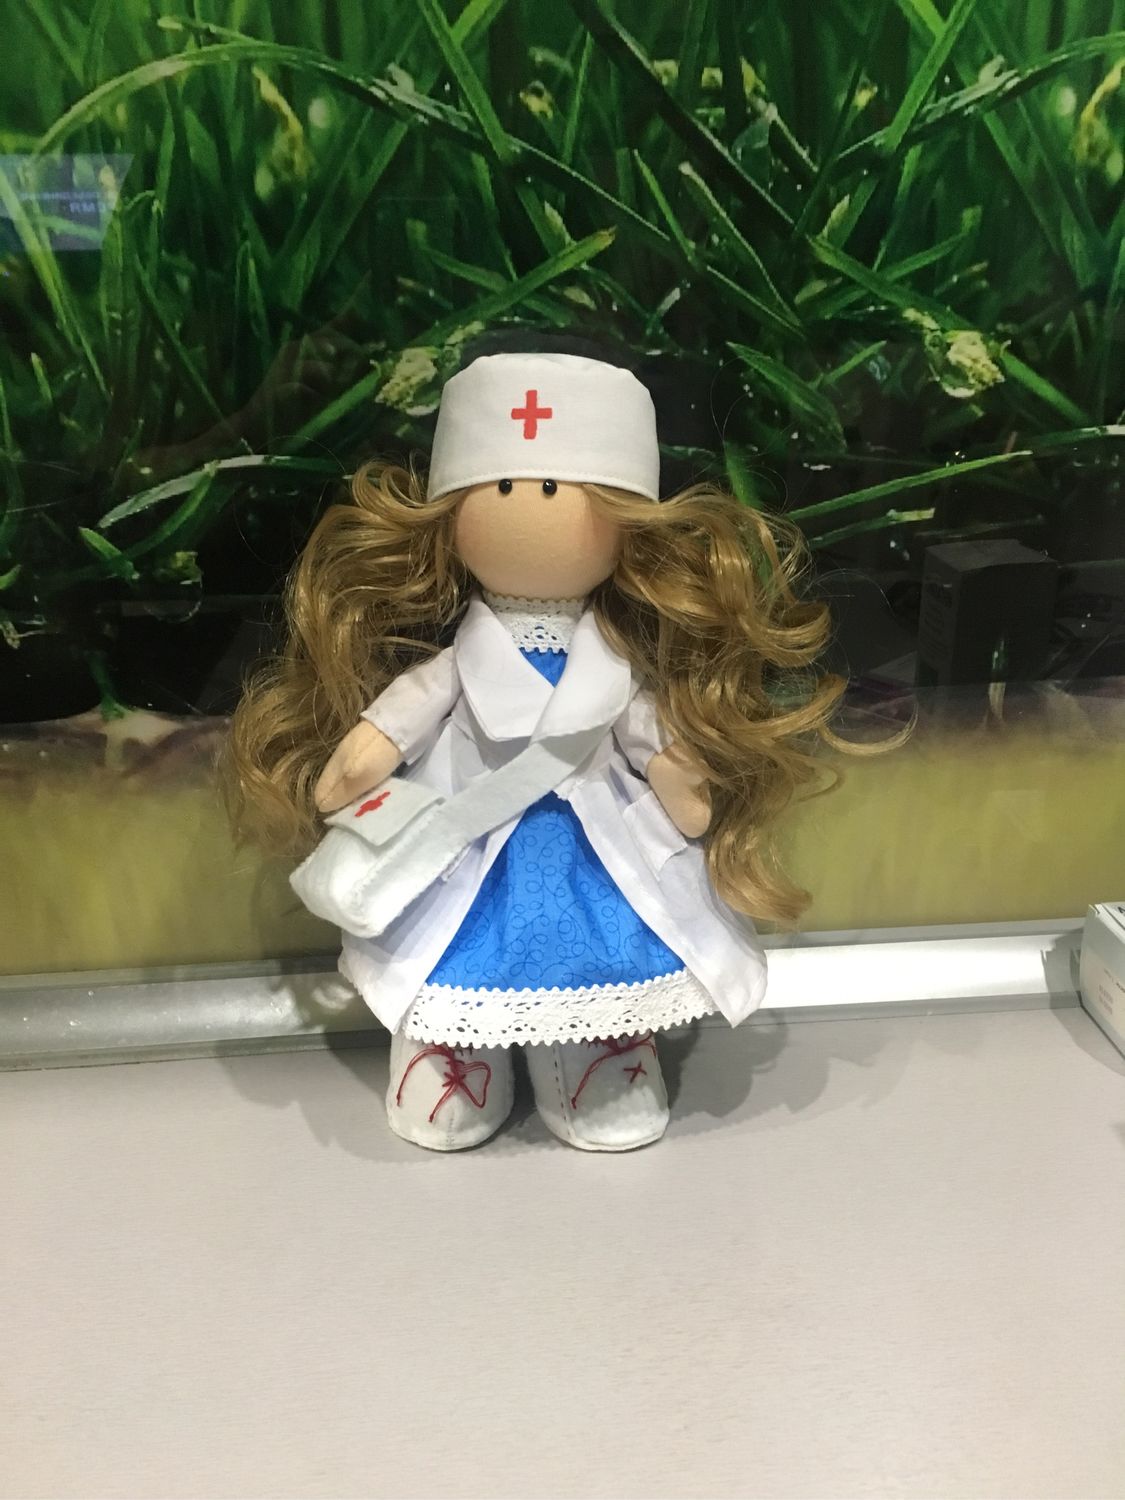 куклы медсестры фото